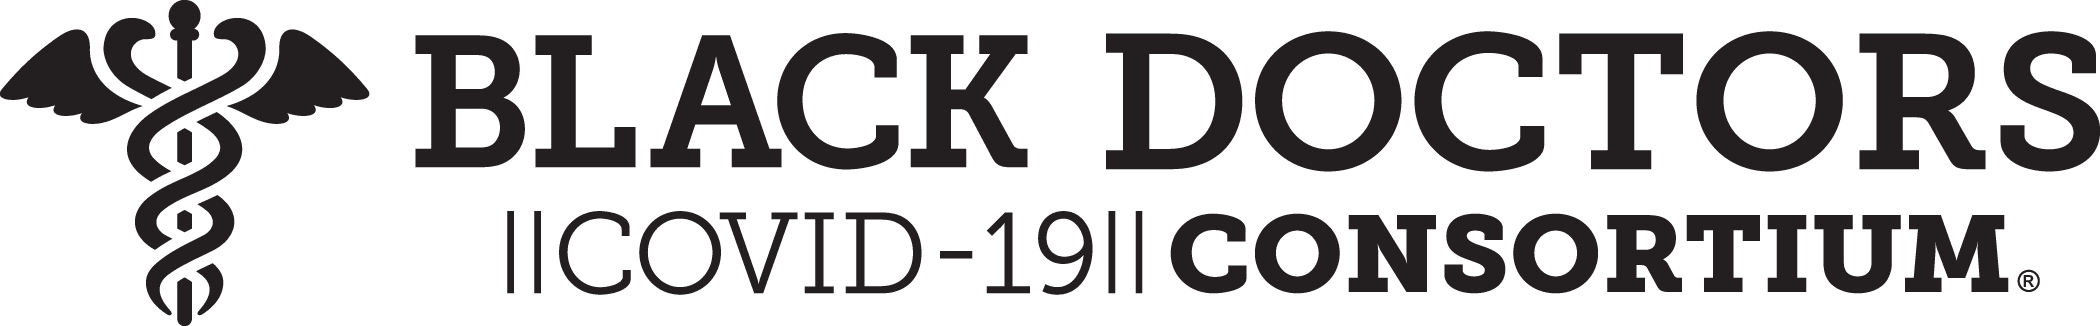 Black Doctors COVID-19 Consortium (BDCC)